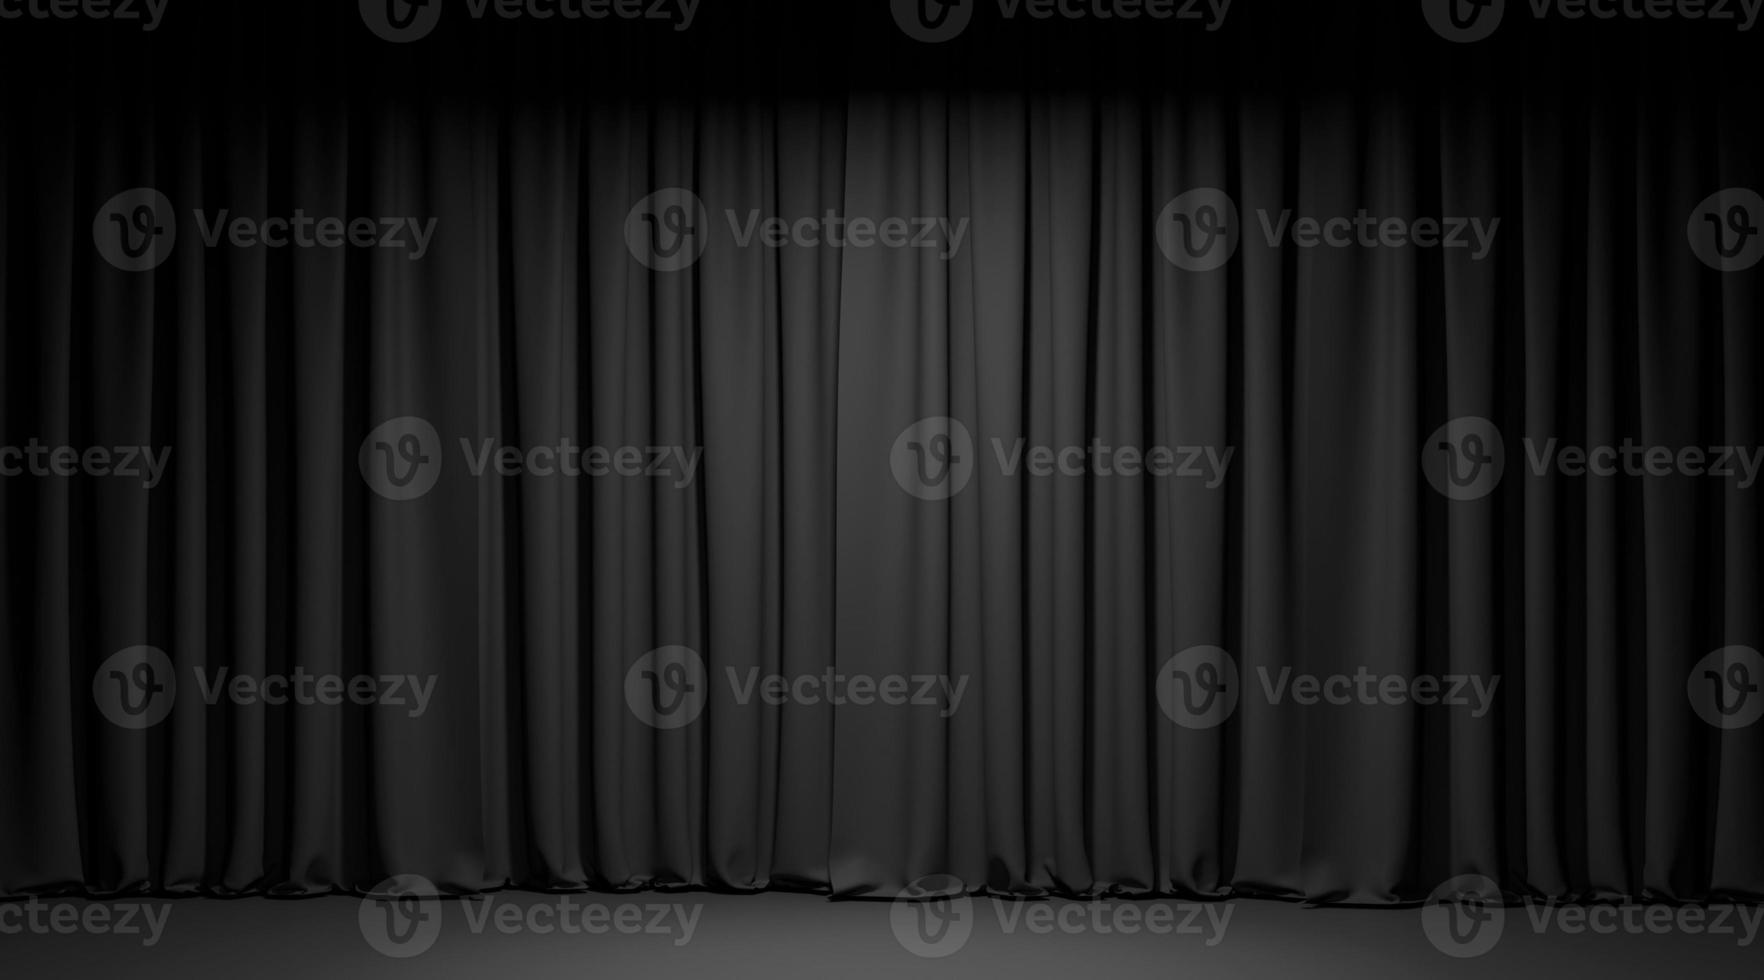 palcoscenico vuoto con tende di velluto nero. illustrazione 3d foto